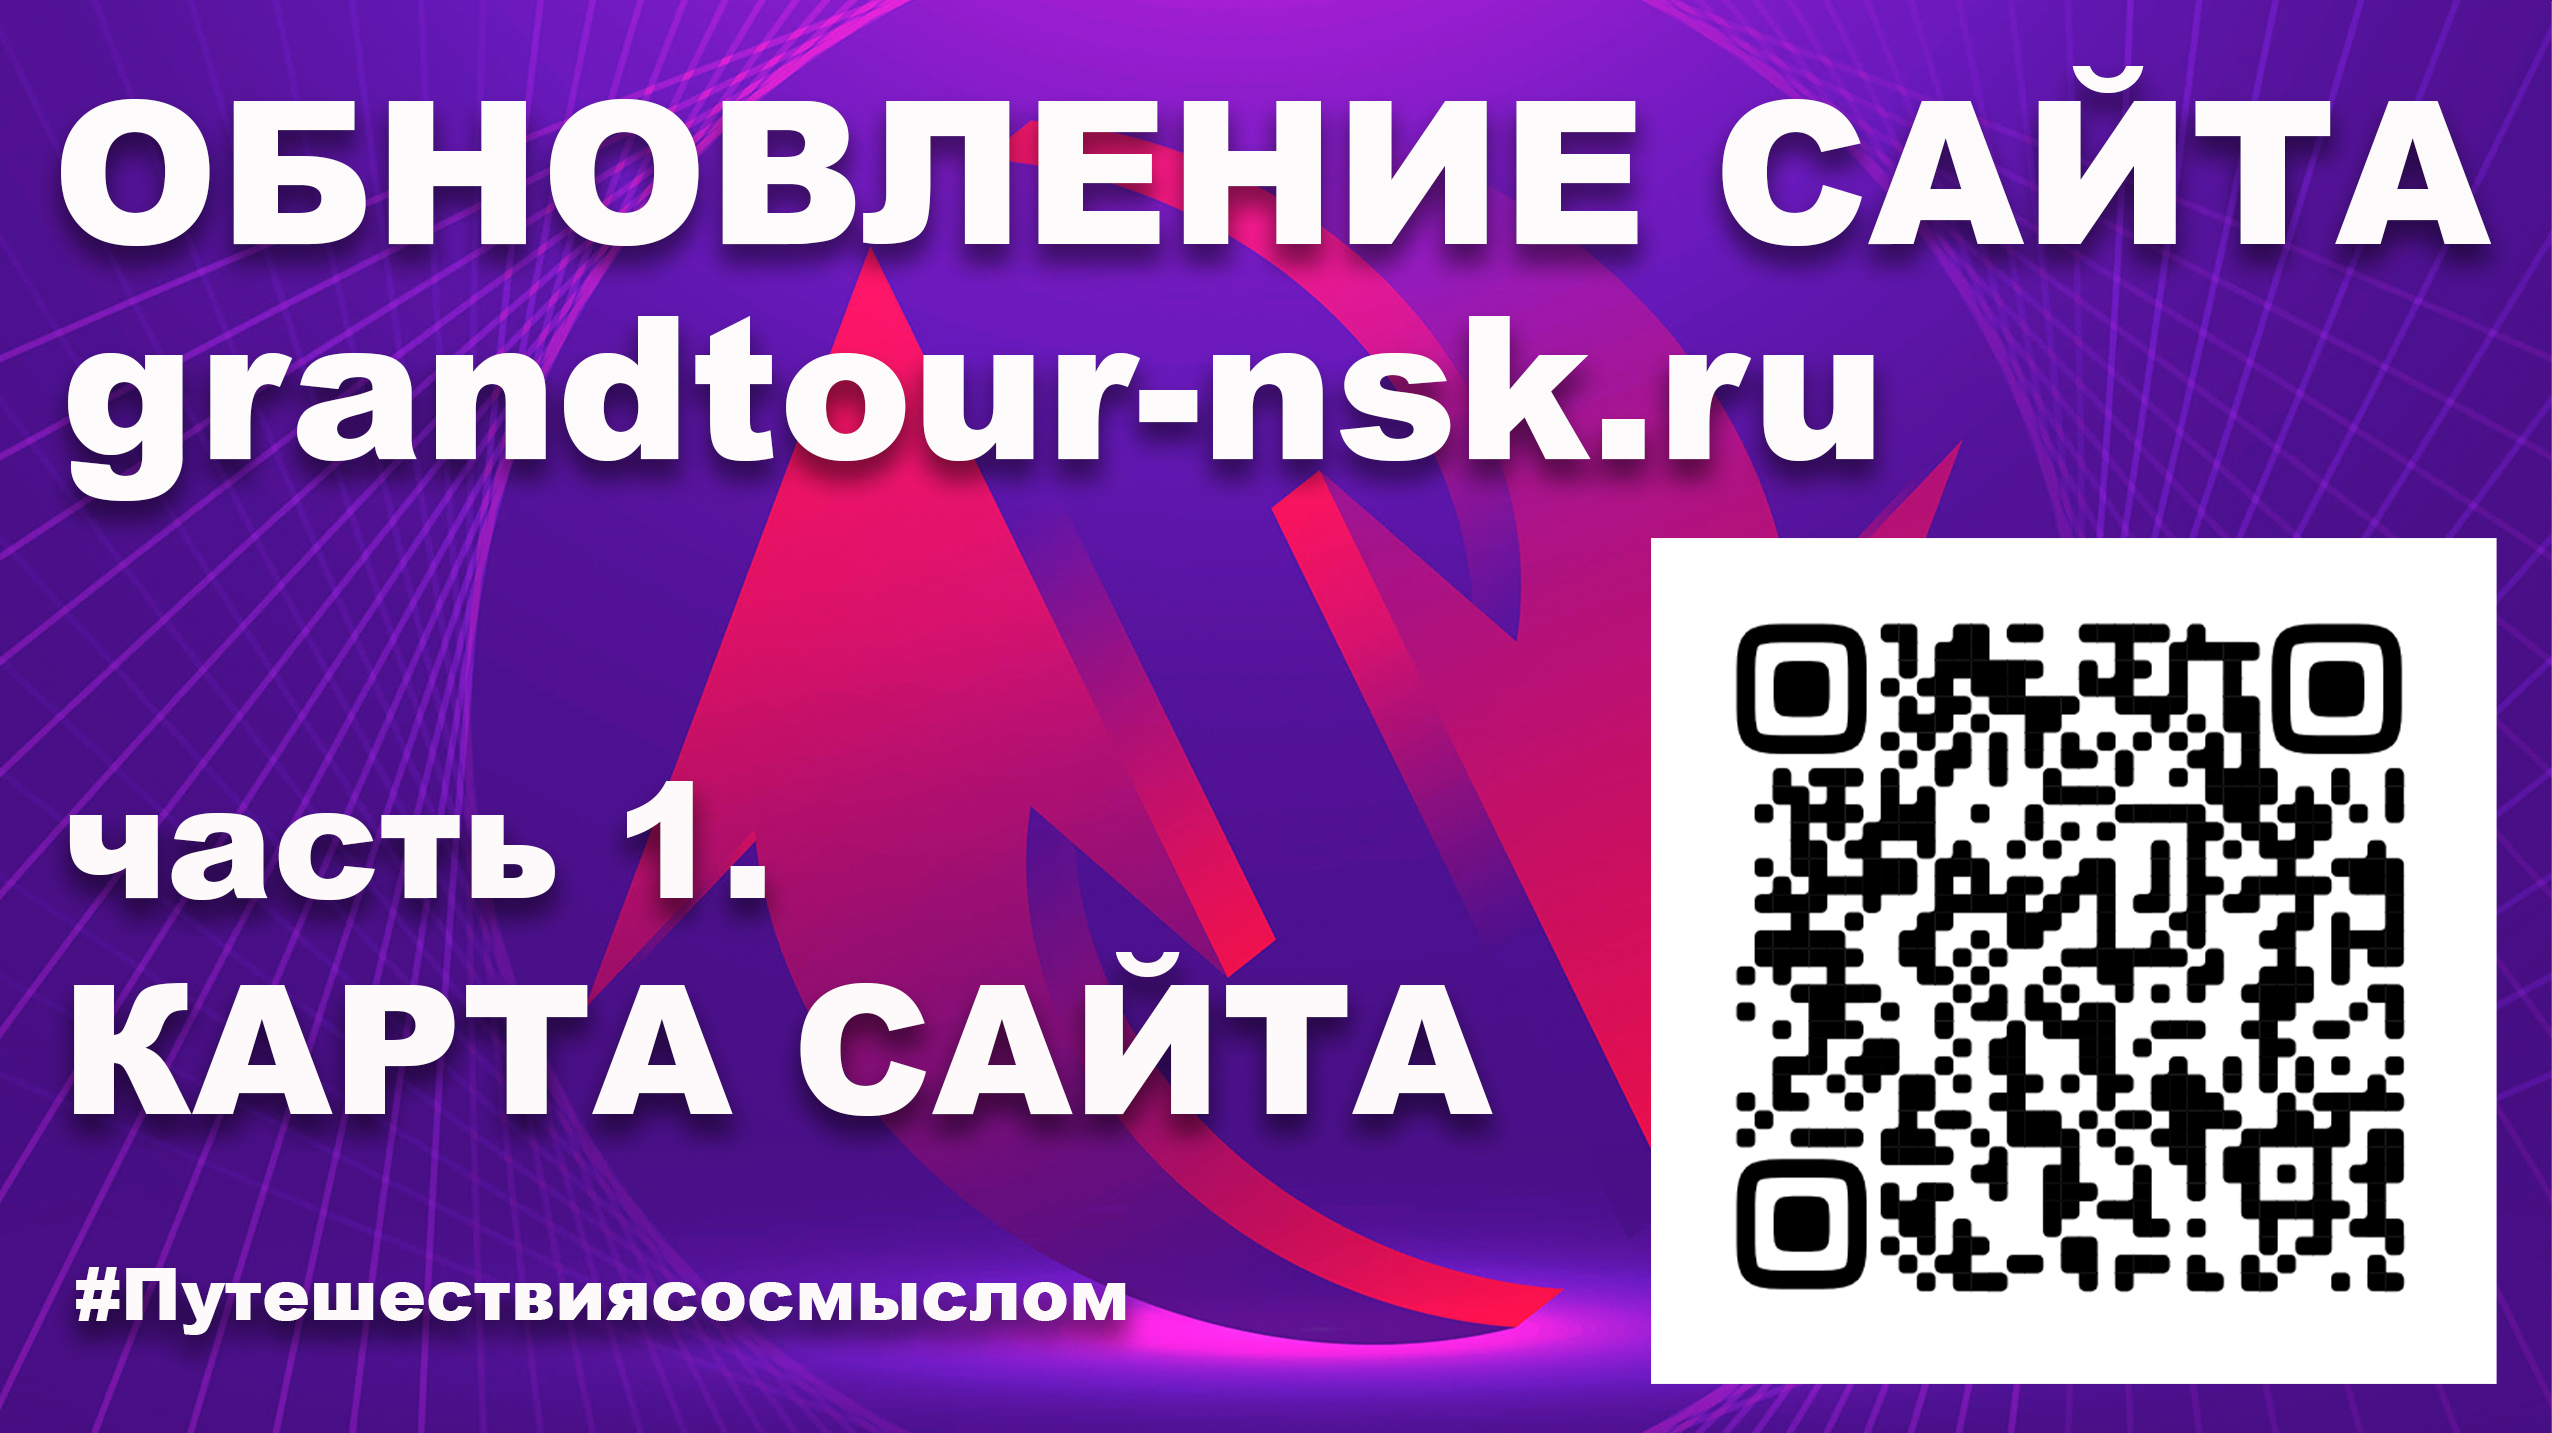 Представляем обновленный сайт grandtour-nsk.ru - КАРТА САЙТА